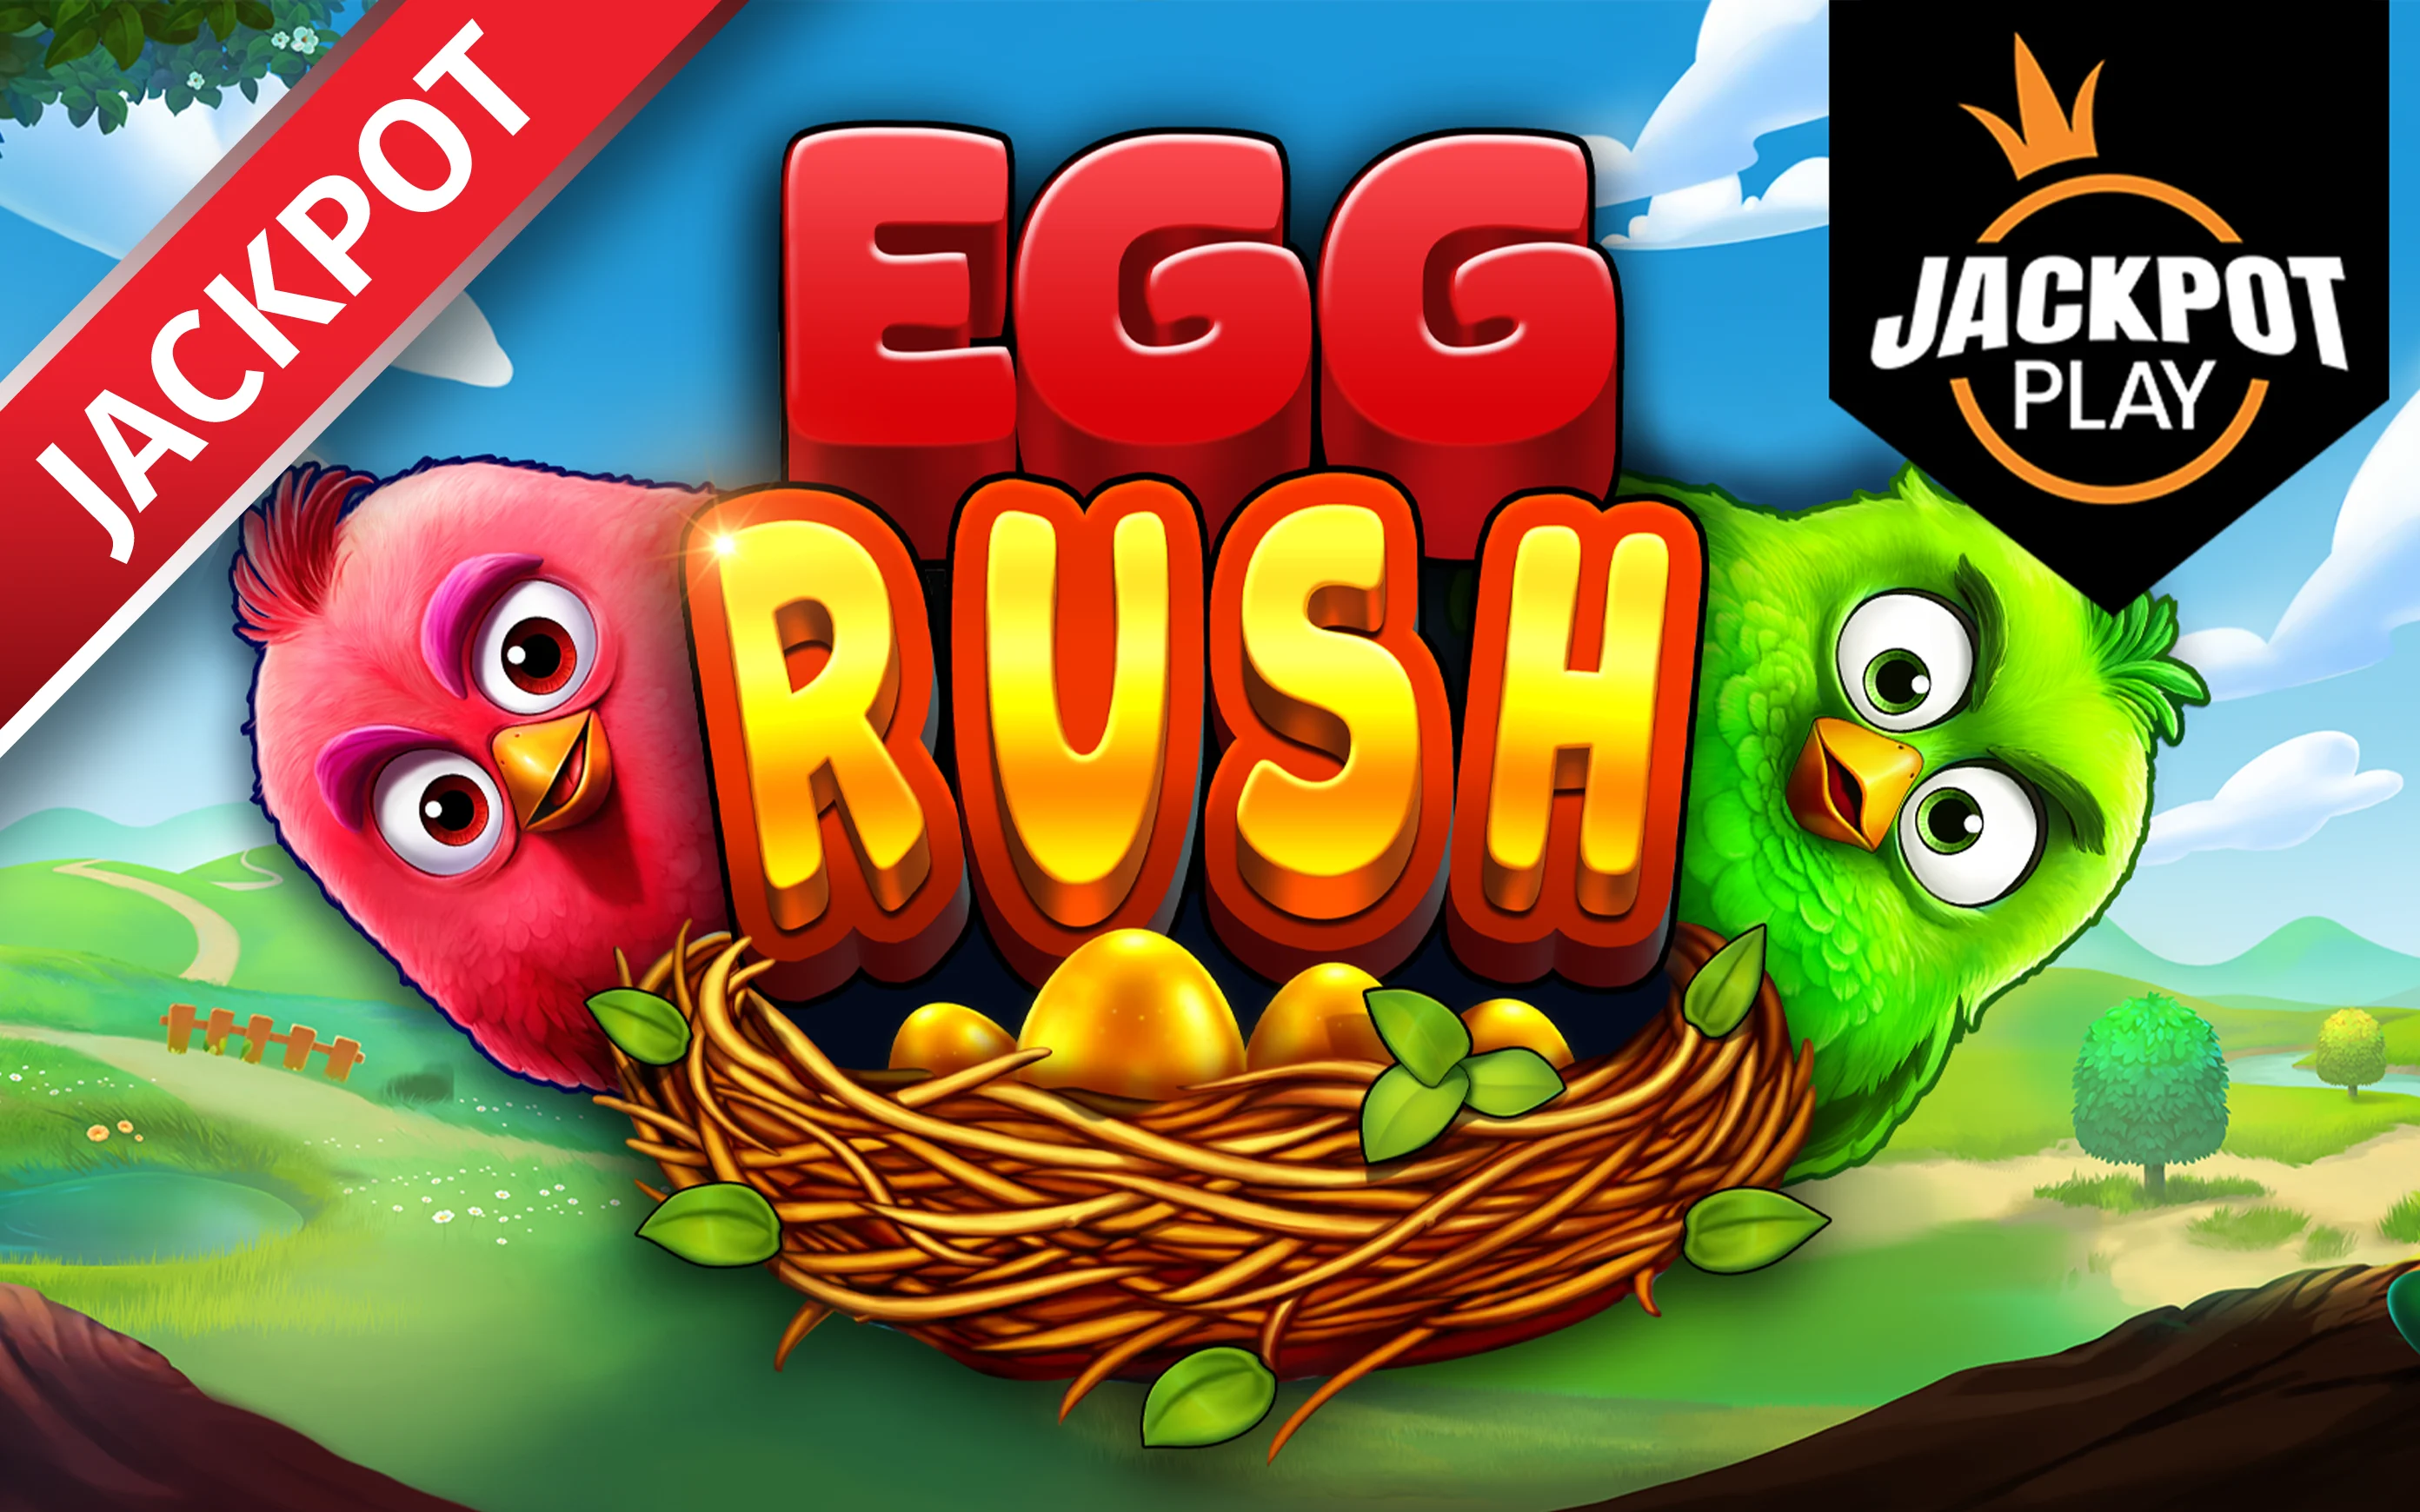 Chơi Egg Rush Jackpot Play trên sòng bạc trực tuyến Starcasino.be